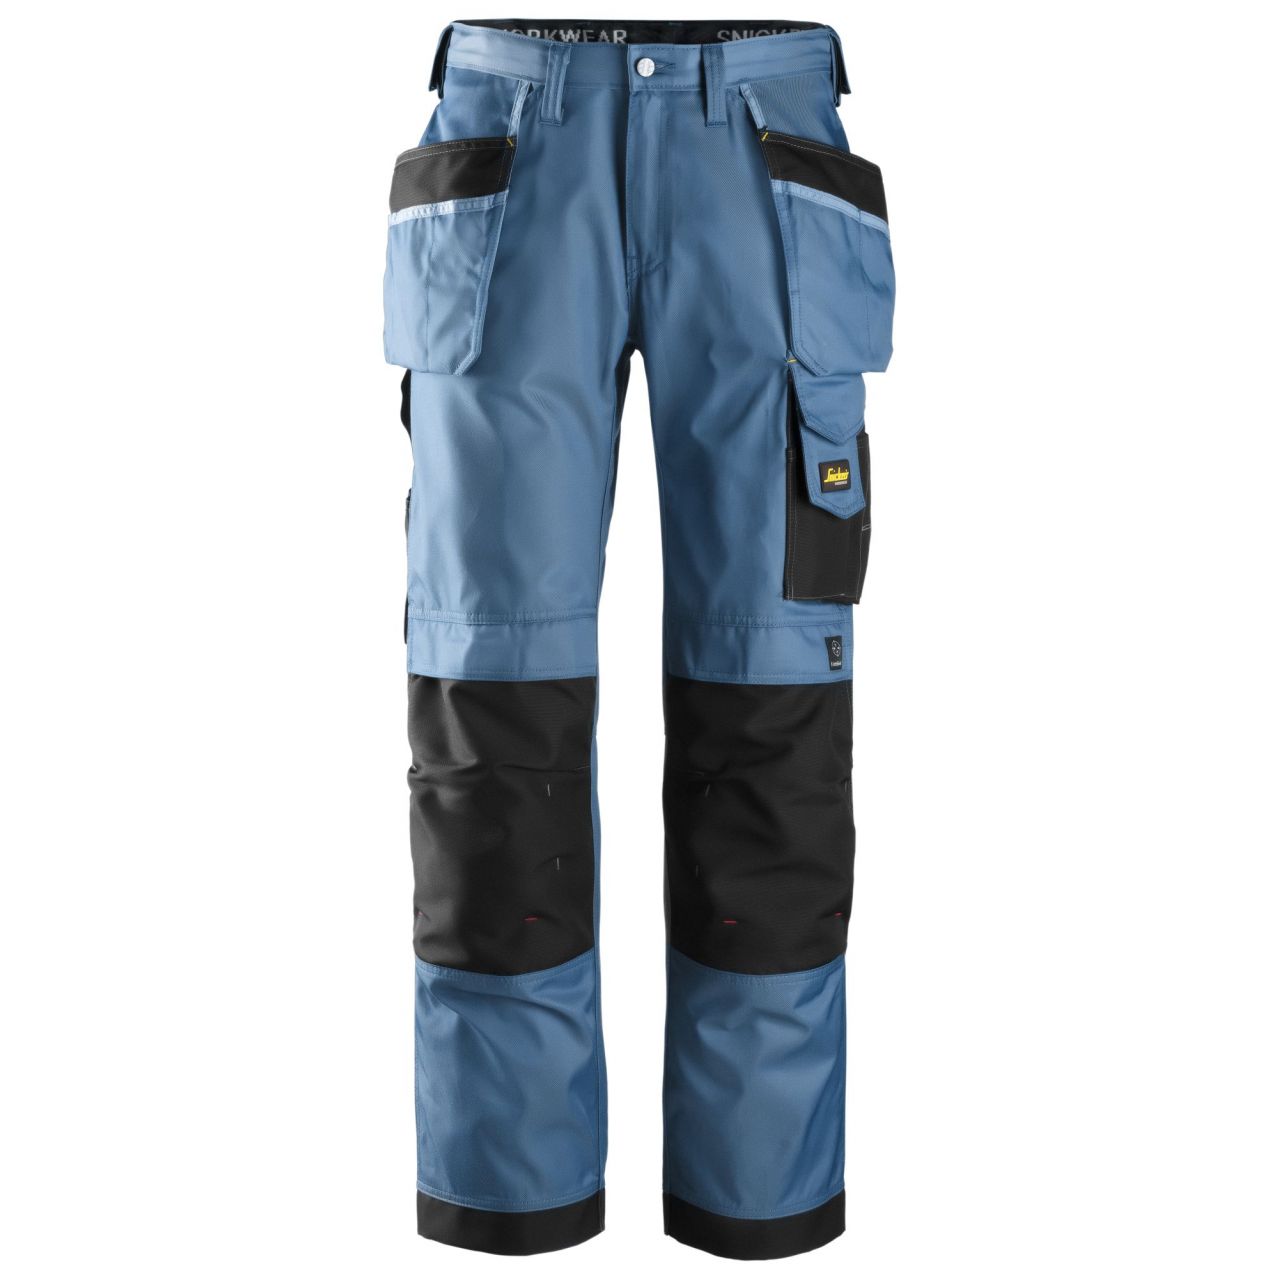 3212 Pantalón largo DuraTwill con bolsillos flotantes azul oceano-negro talla 192